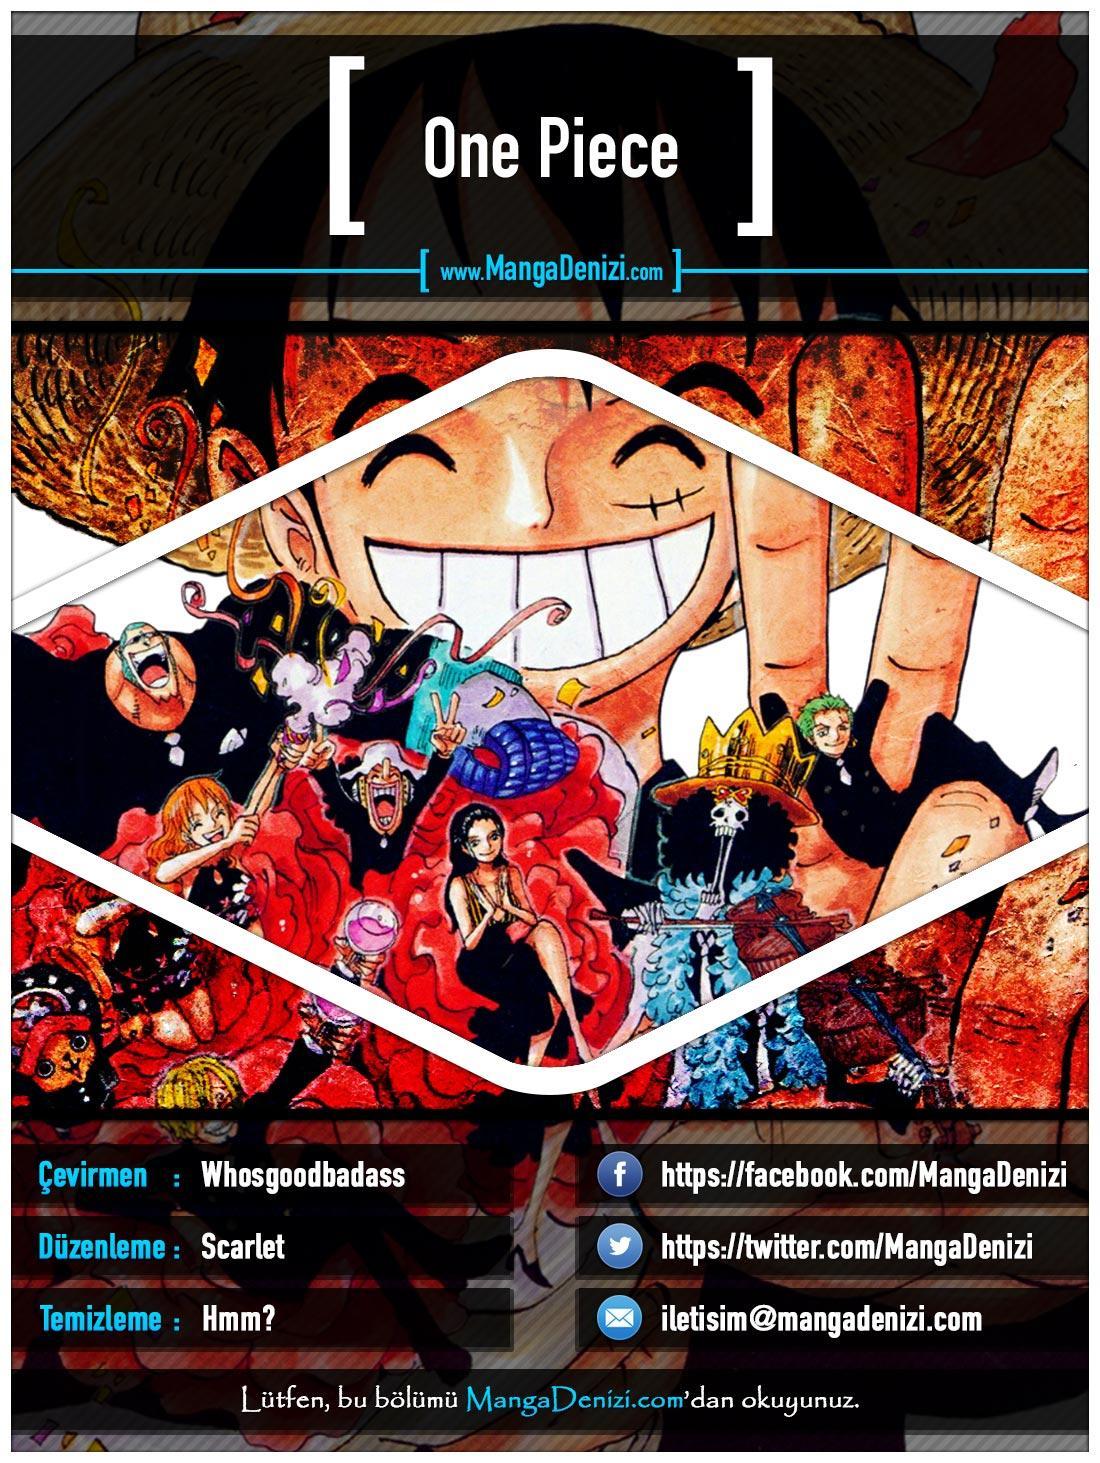 One Piece [Renkli] mangasının 0644 bölümünün 1. sayfasını okuyorsunuz.